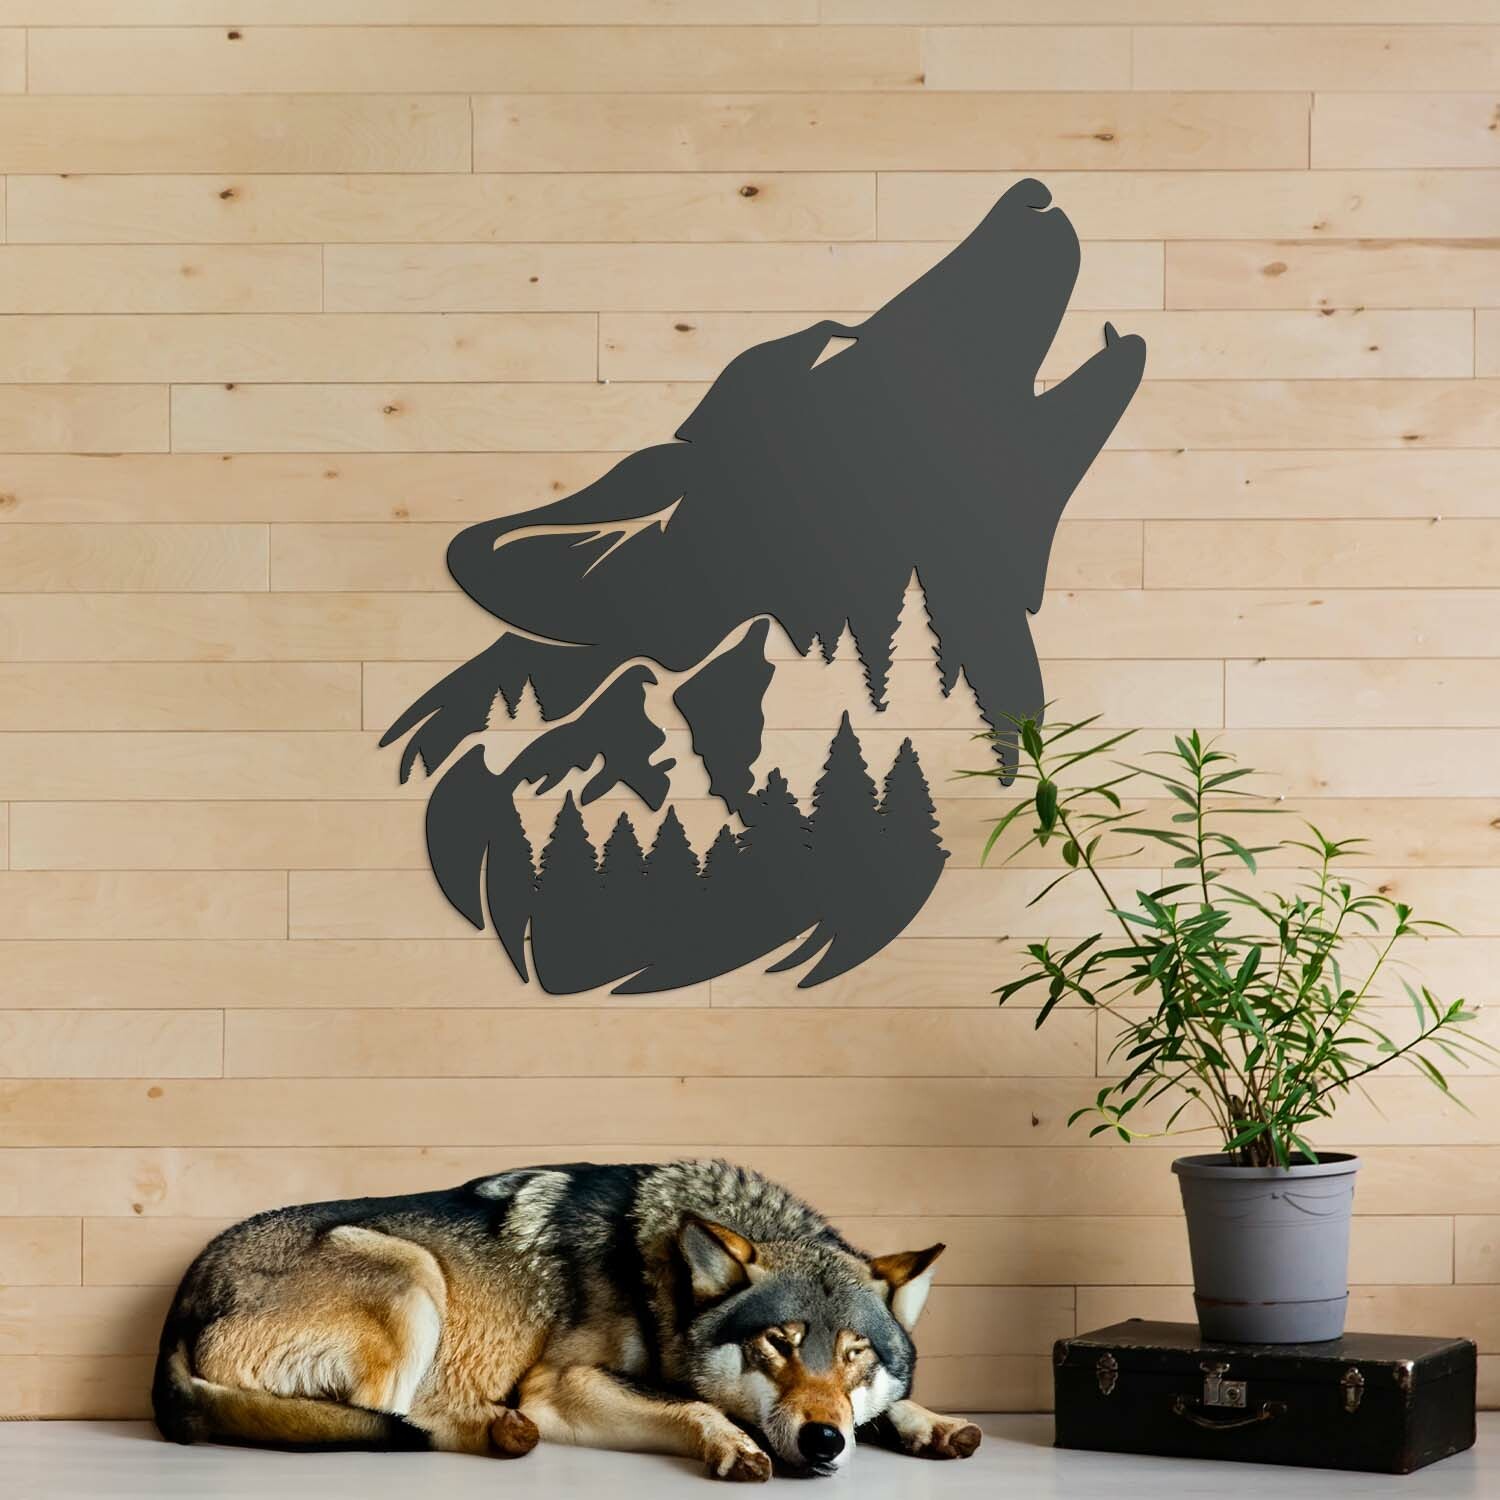 Drevená nálepka - Vlk samotár